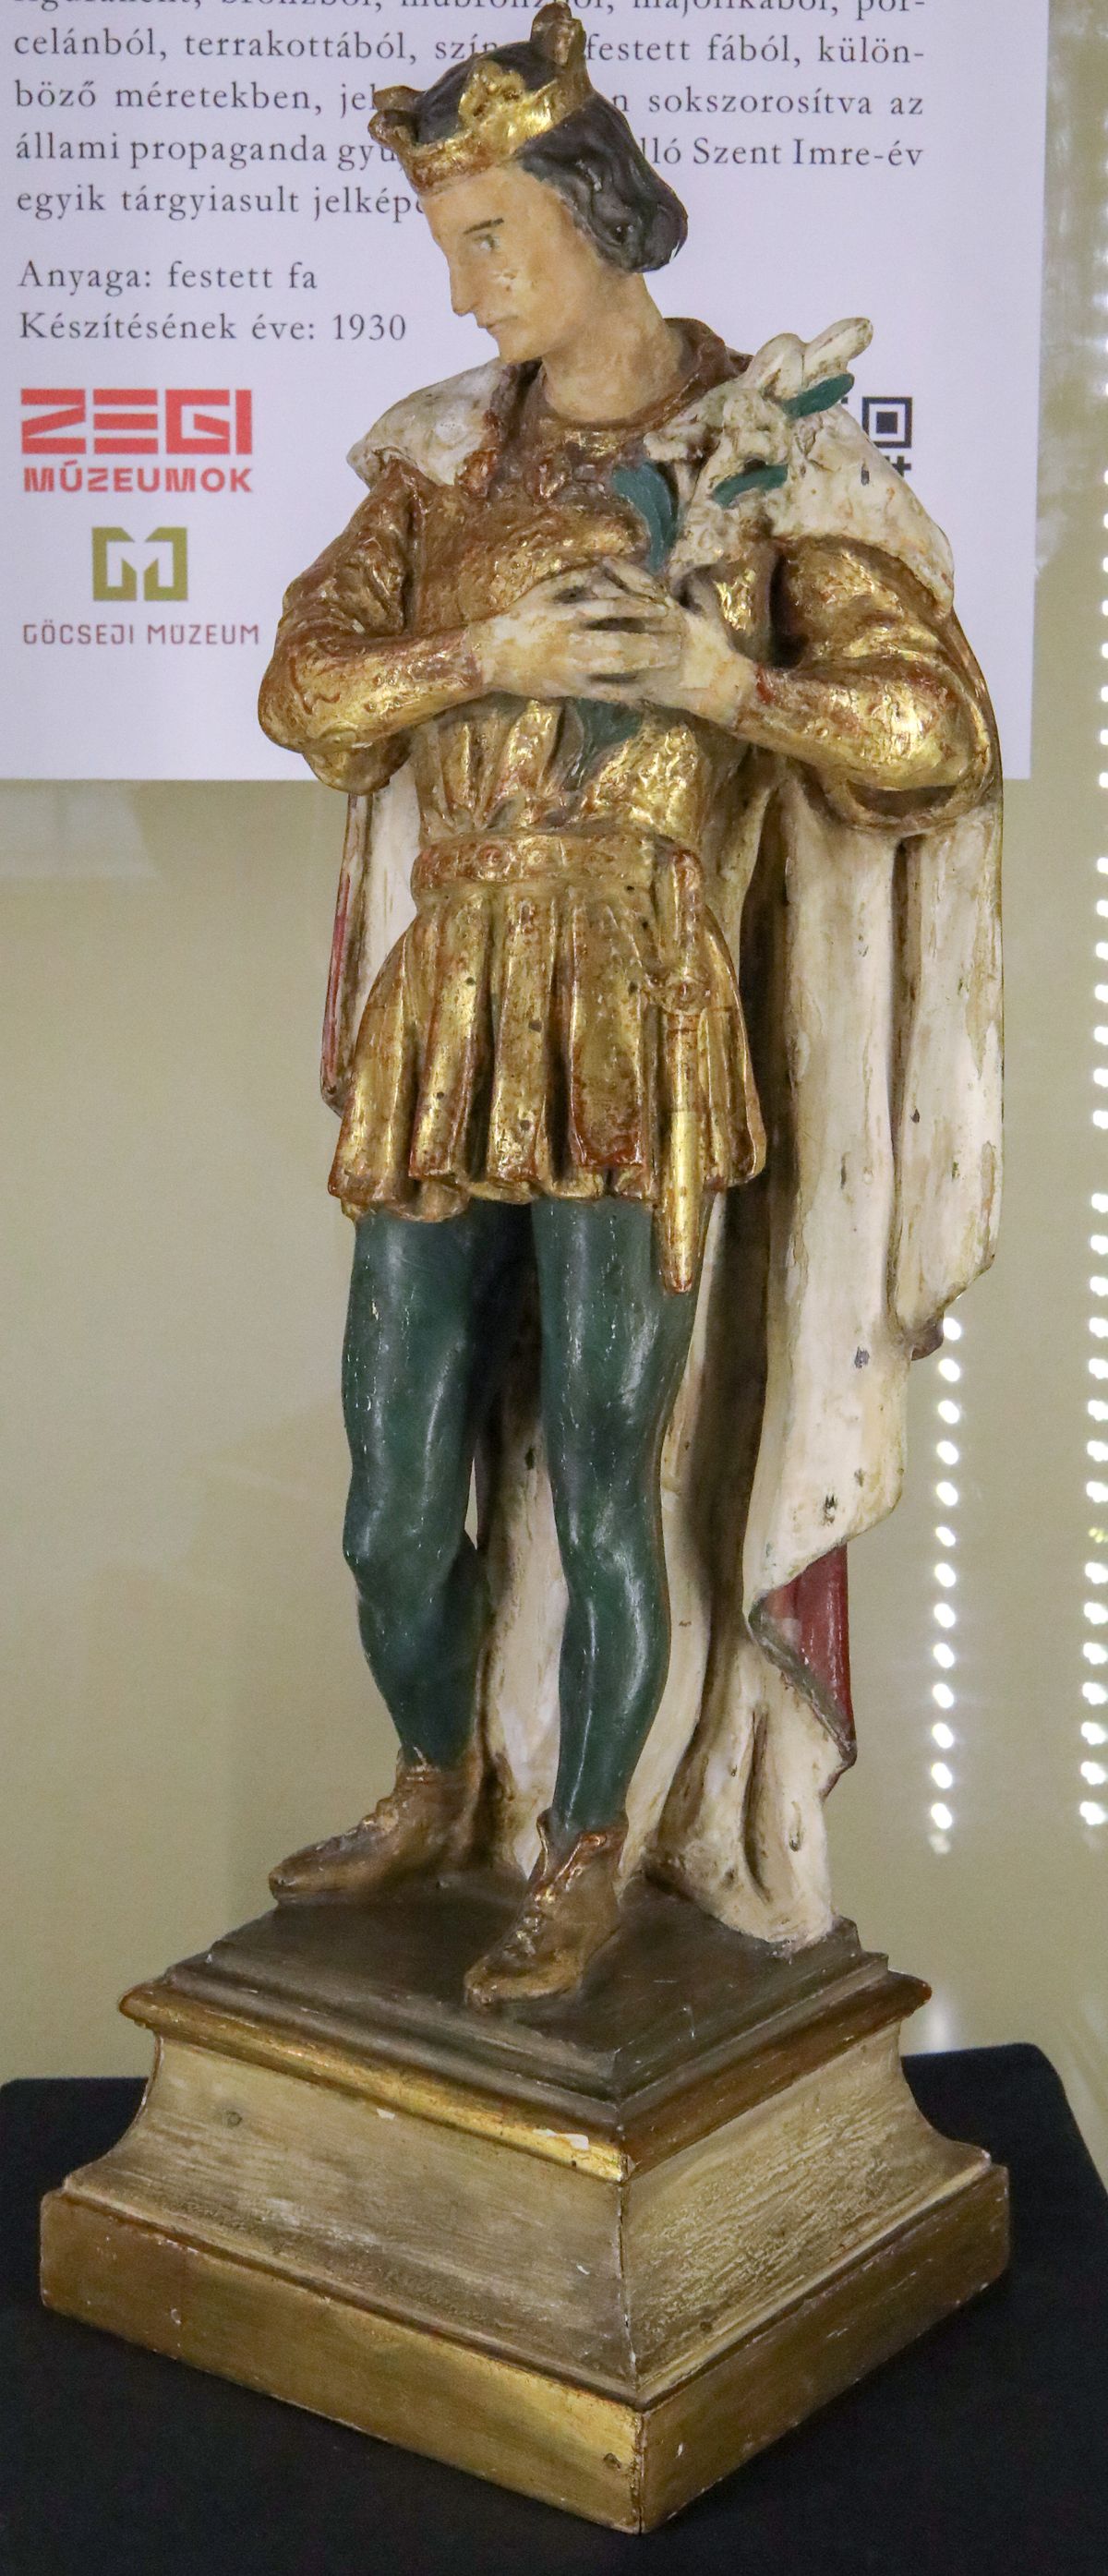  Szent Imre-szobor 